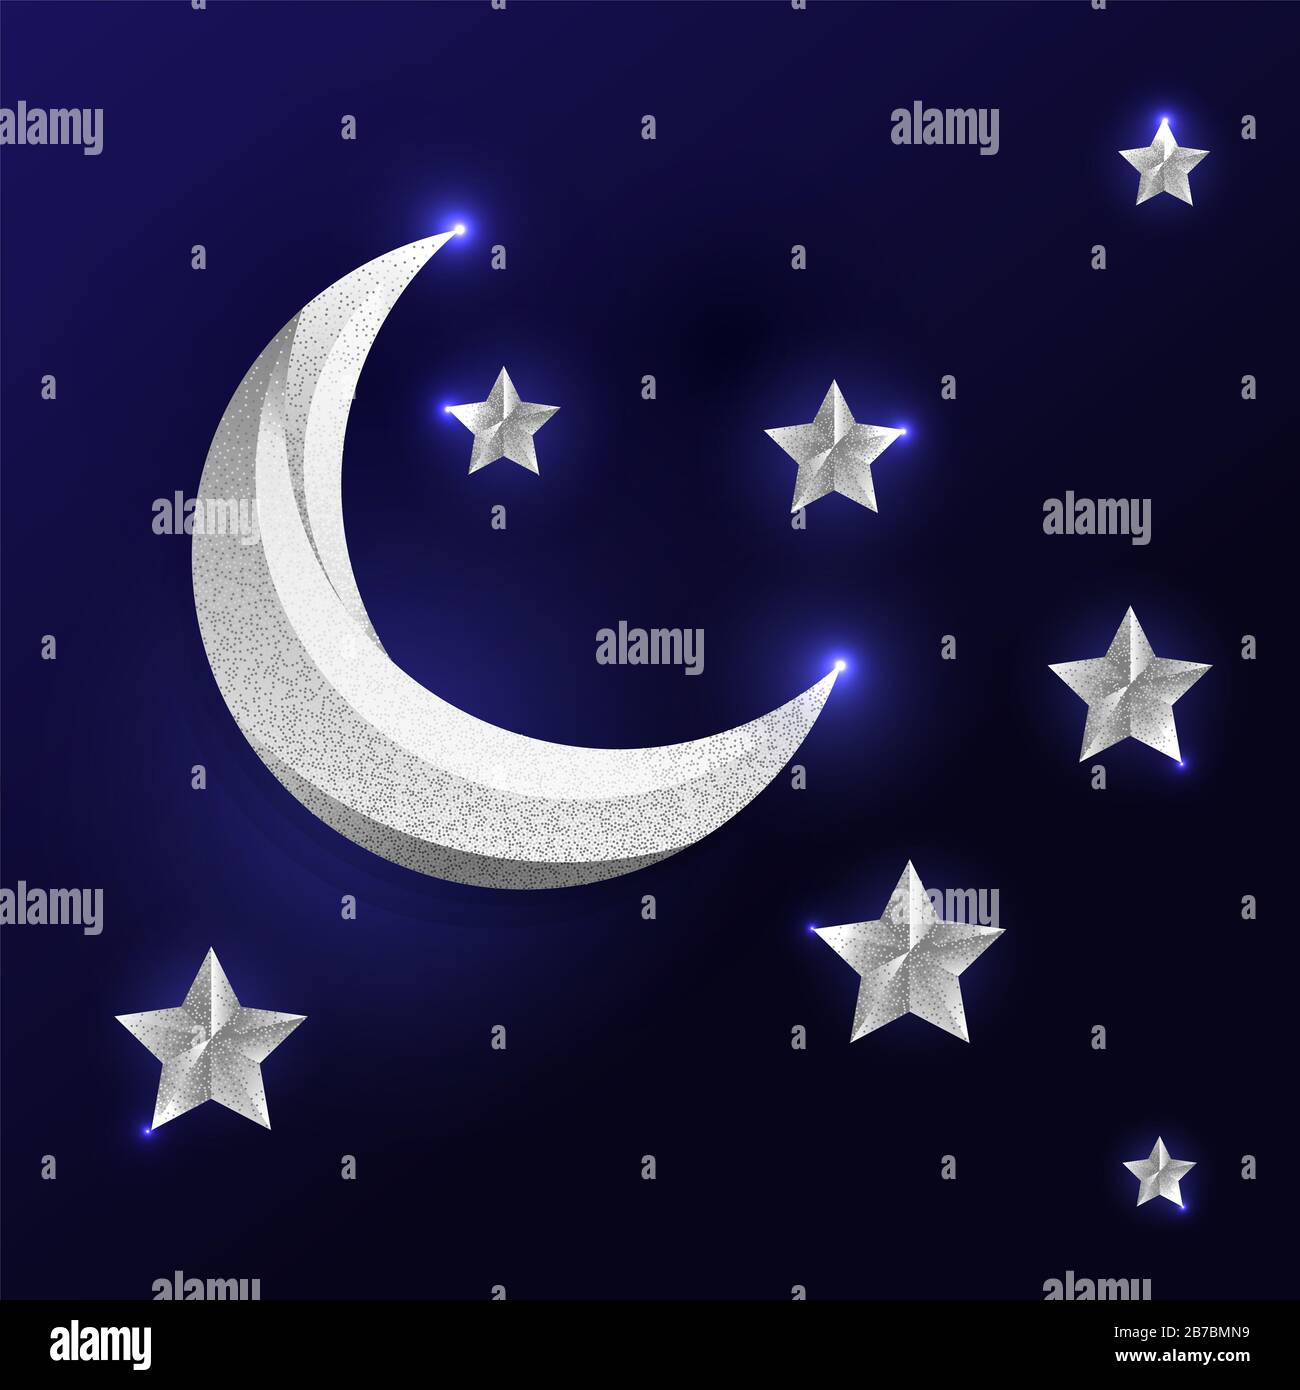 Silvery moon e imágenes de alta resolución - Alamy